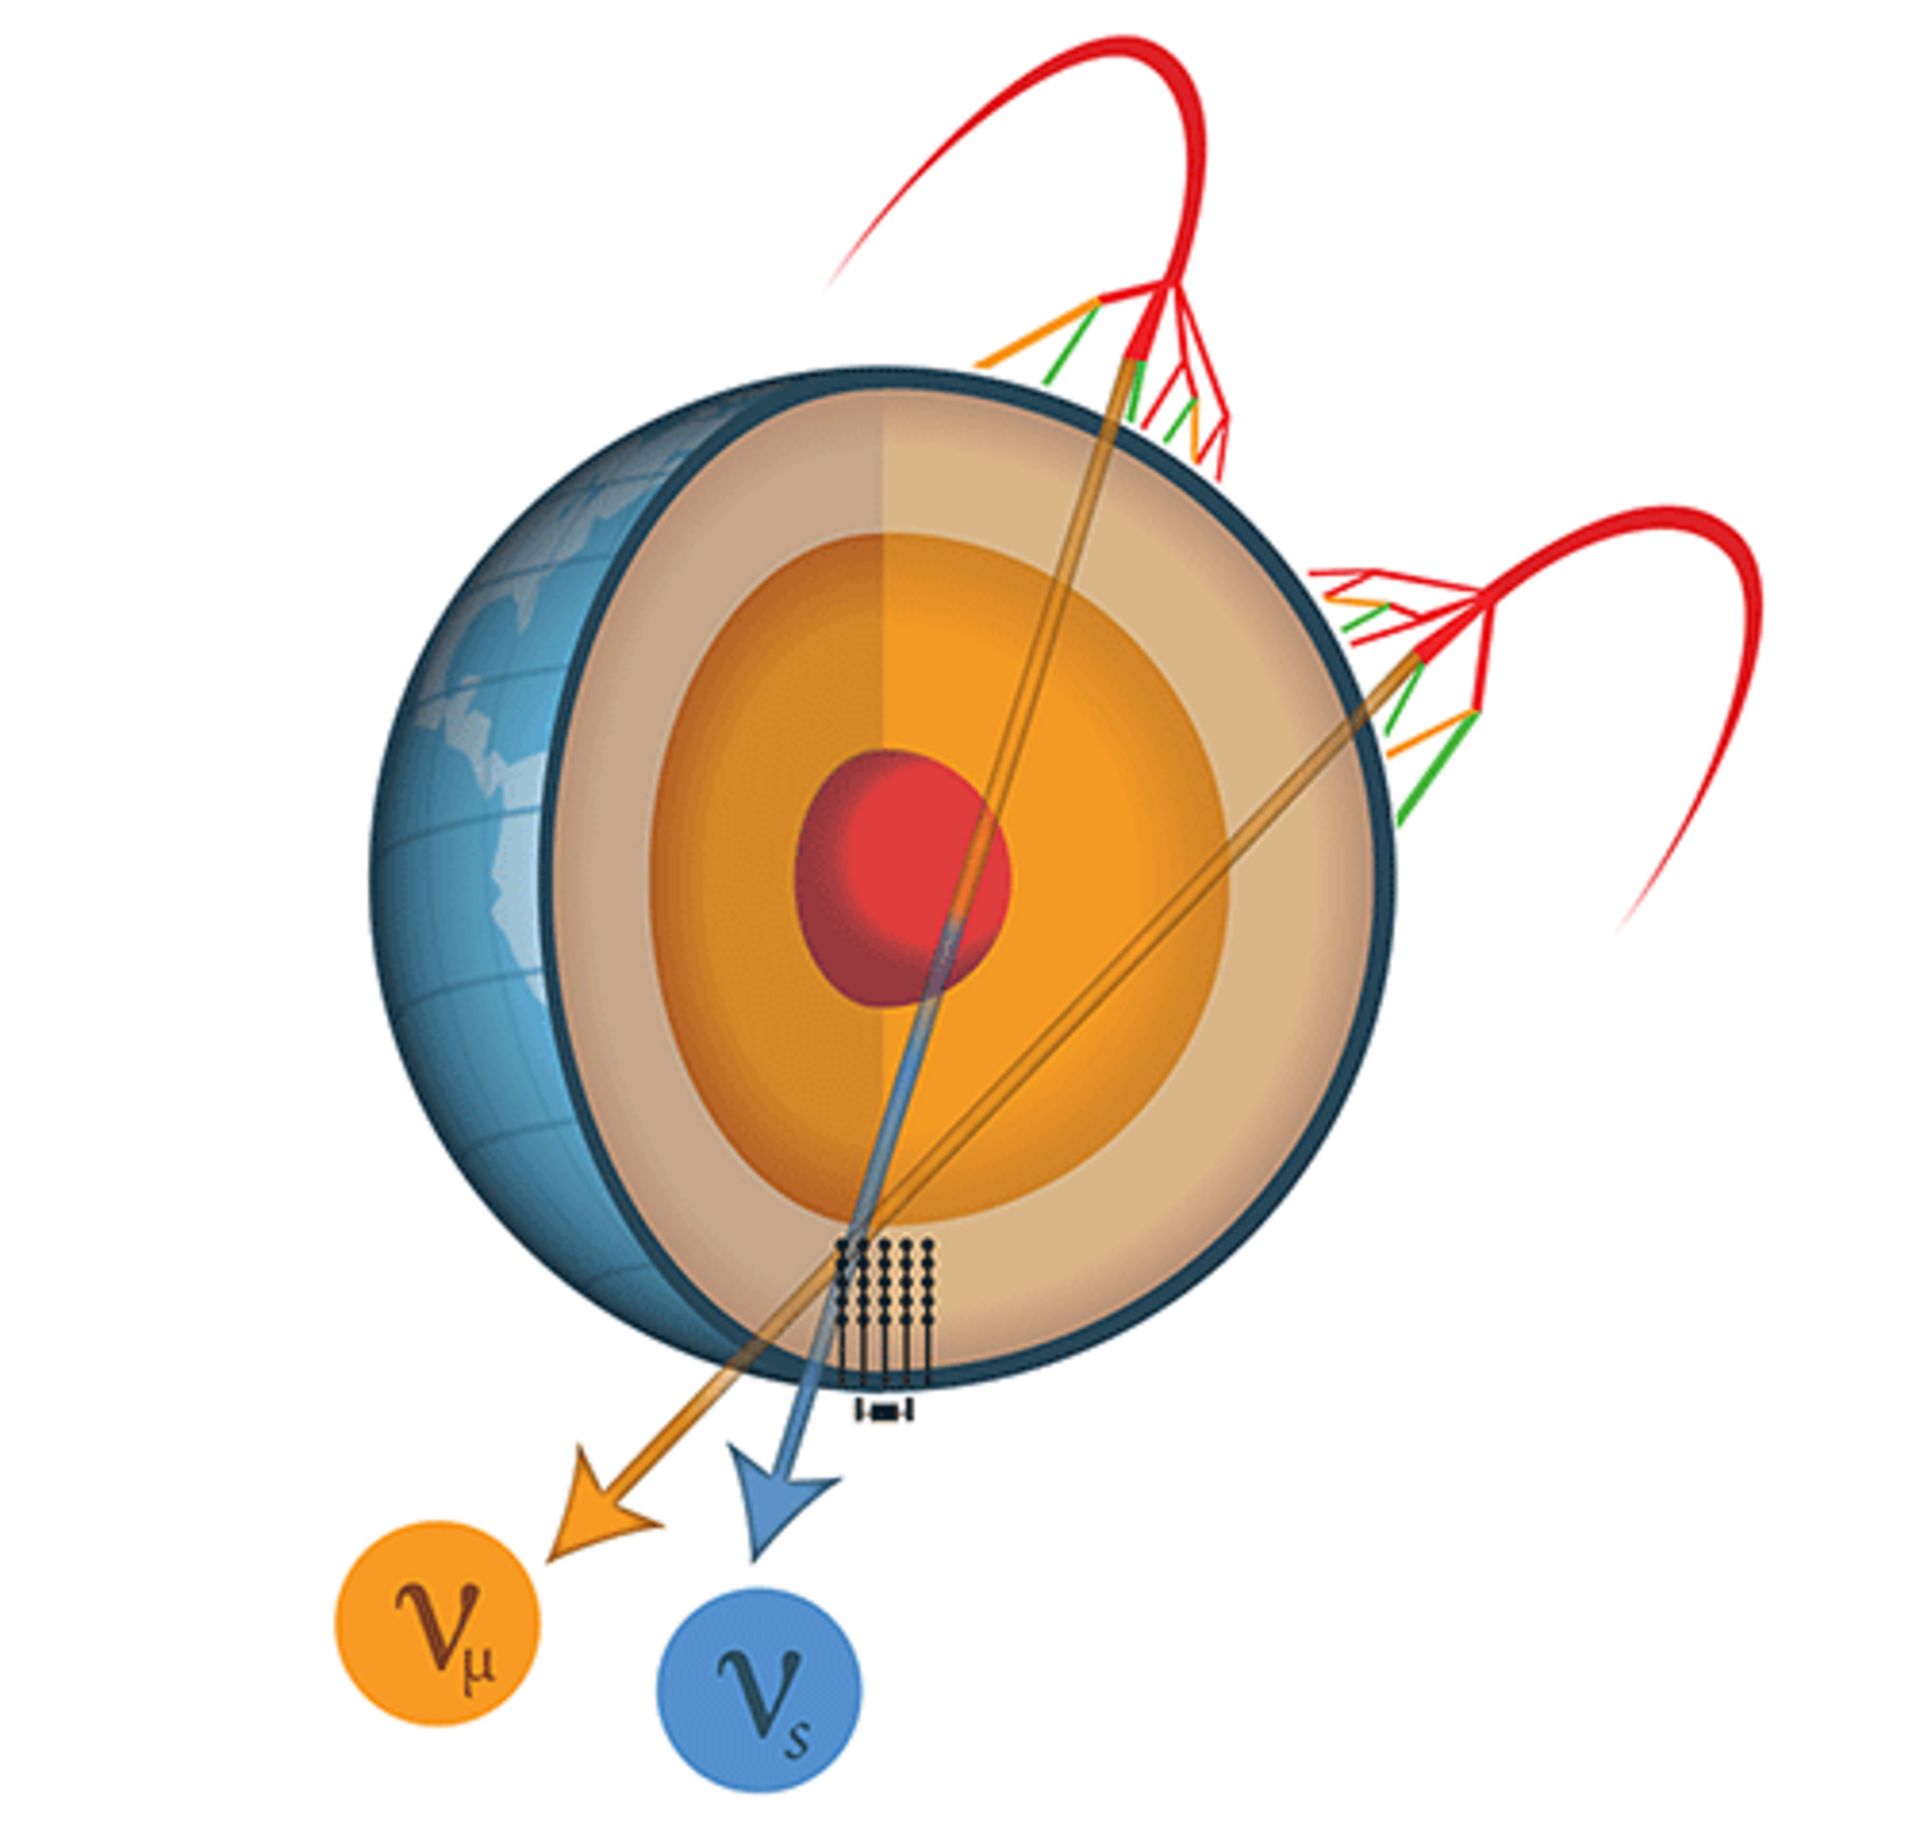 مرجع متخصصين ايران ذرات نوترينو / neutrino particles